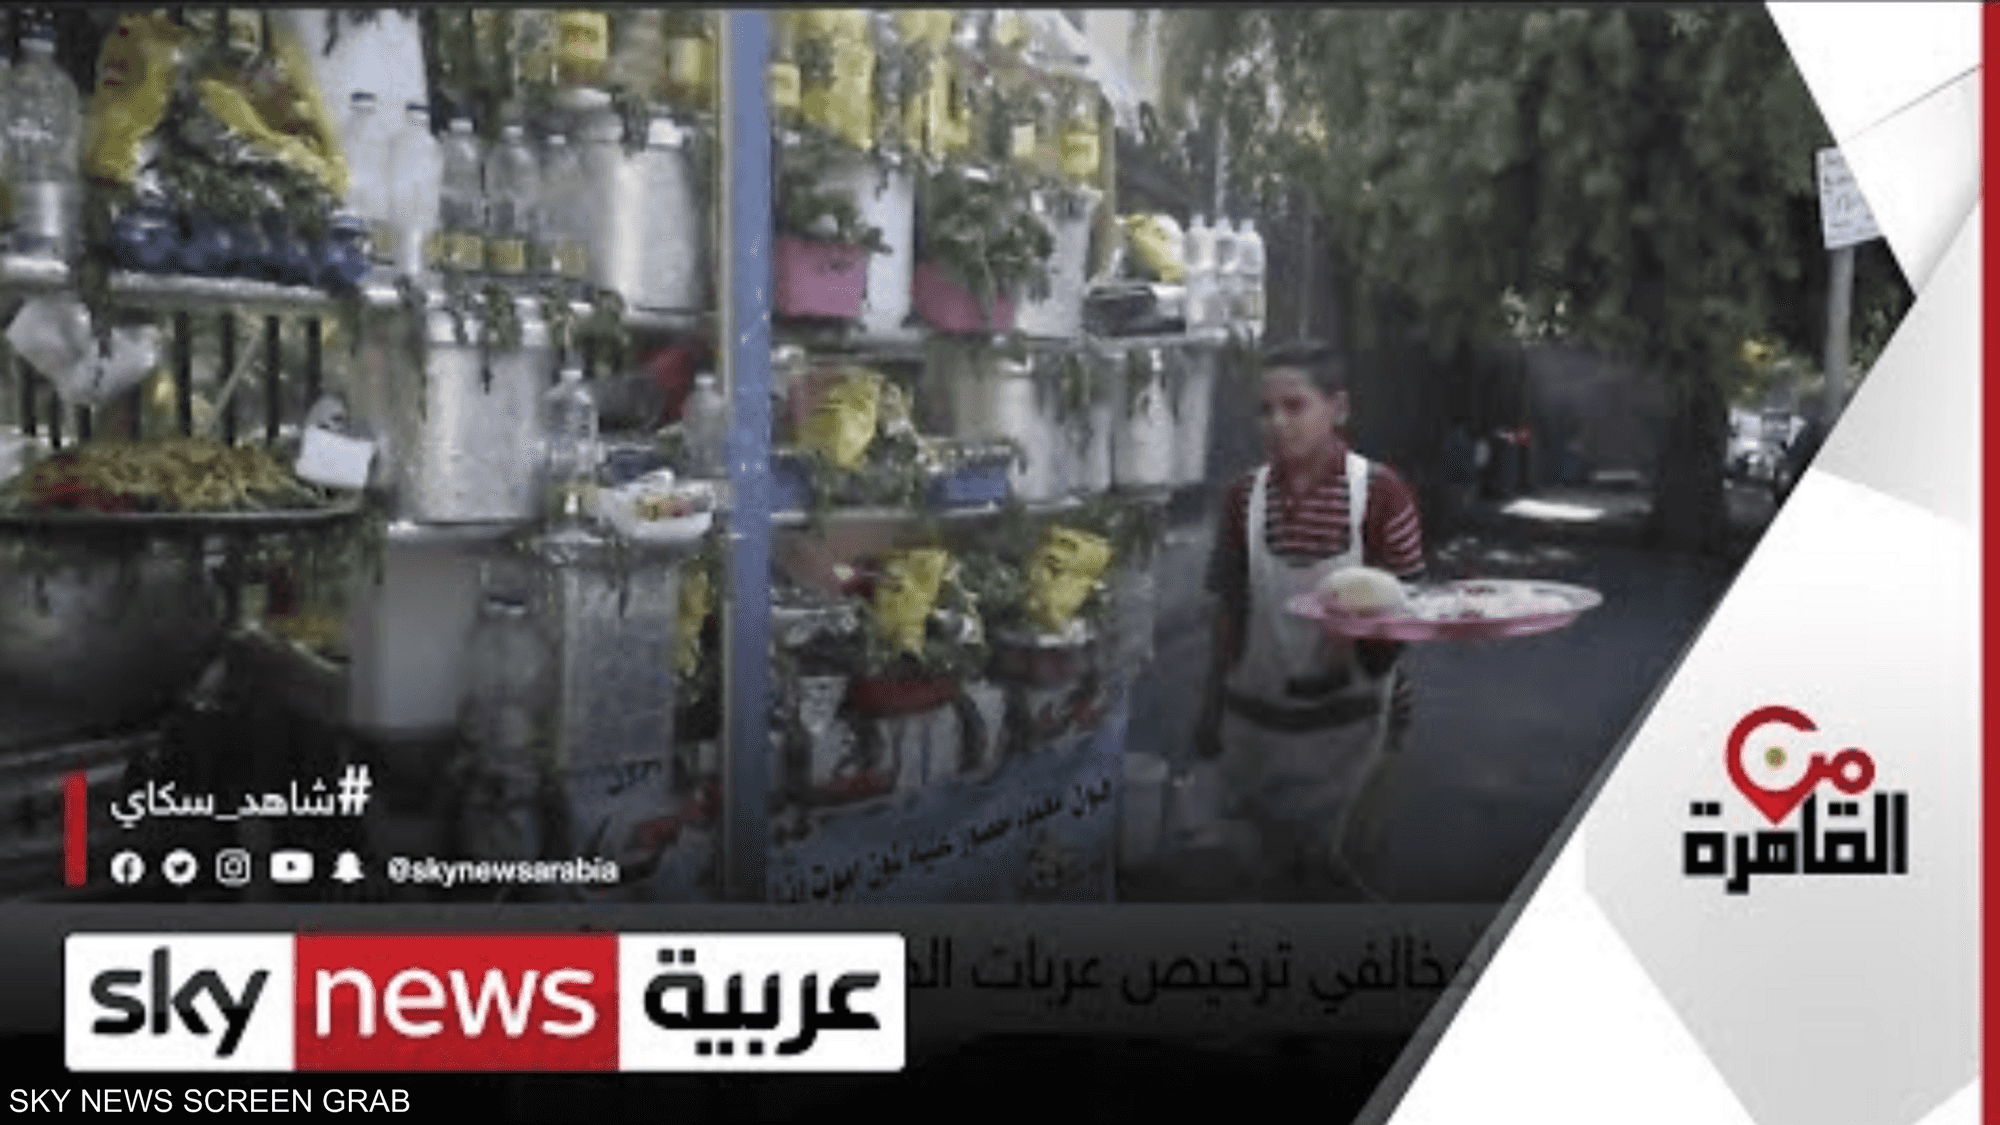 مواصفات محددة لترخيص عربات الطعام المتنقلة في مصر